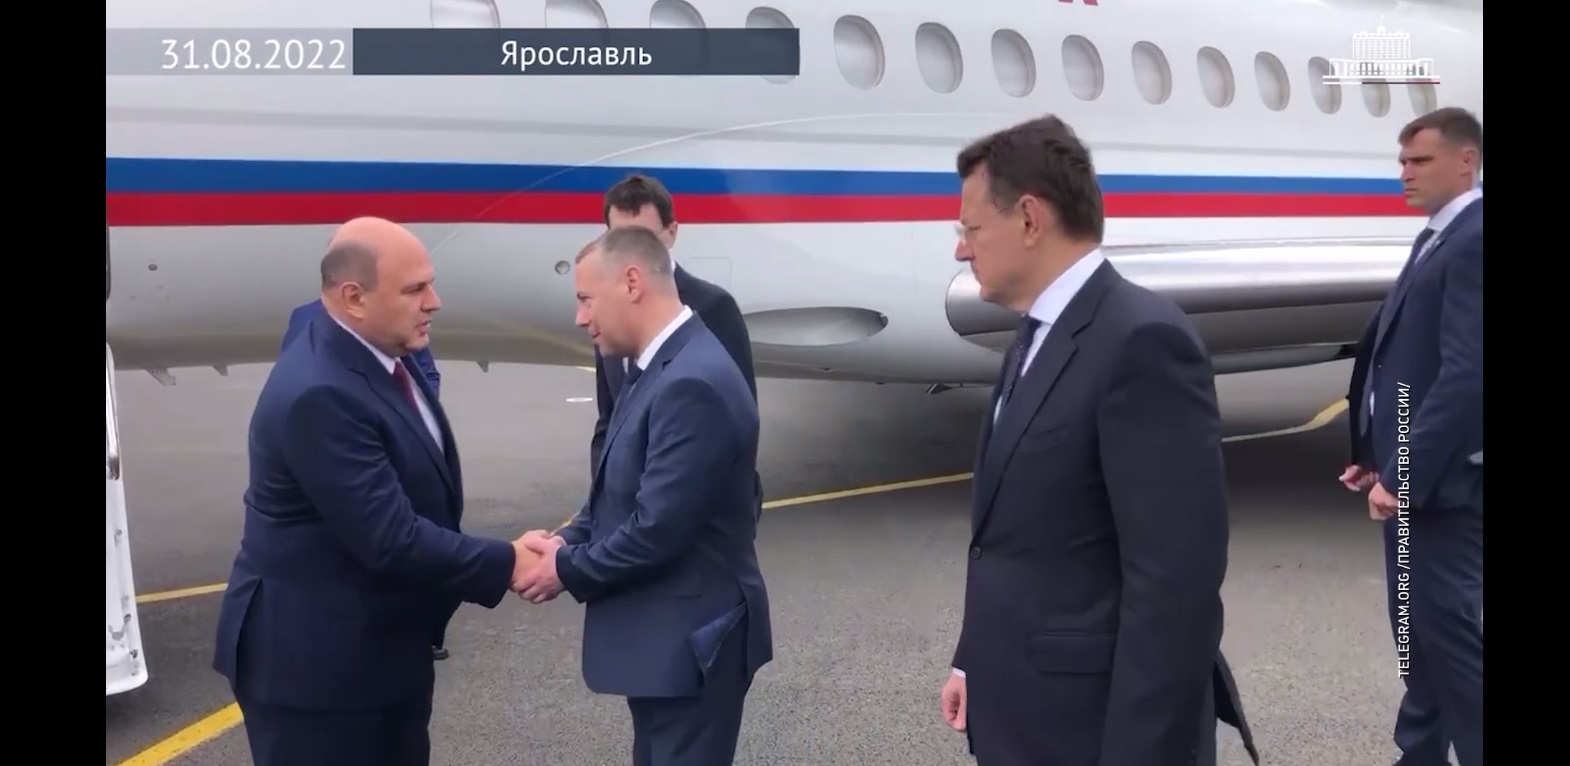 Председатель правительства страны прилетел в Ярославль